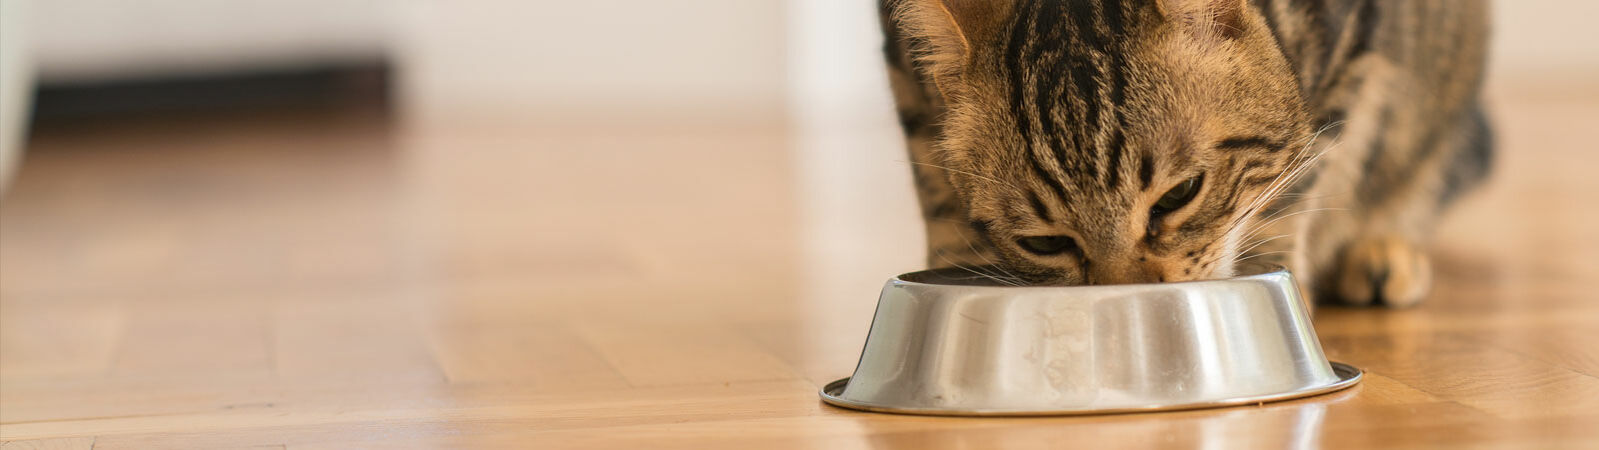 Eine Katze hat ihren Kopf über einen Napf gebeugt und frisst Katzenfutter.